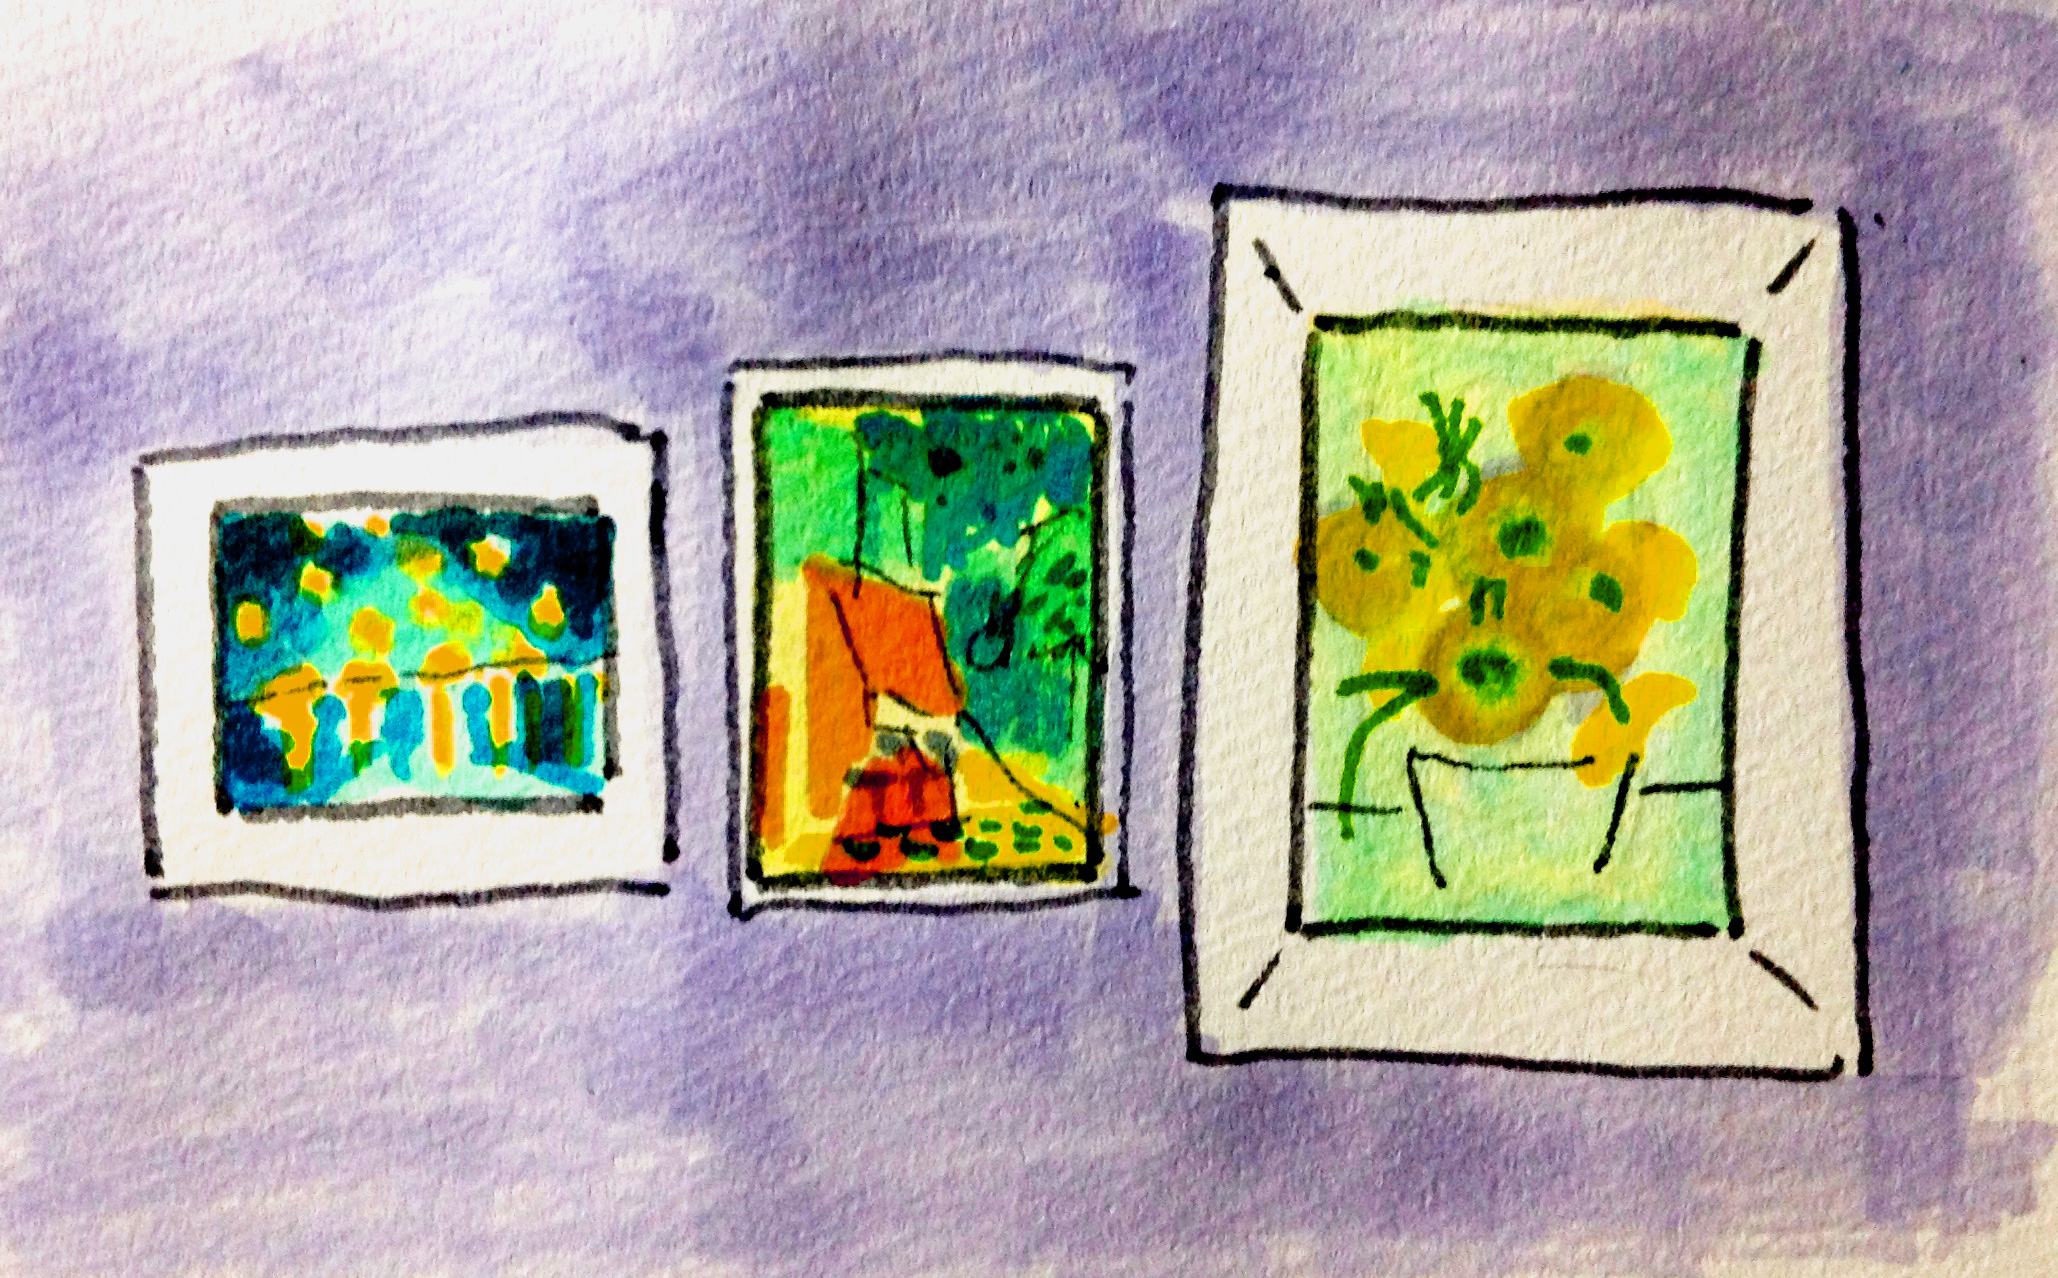 ゴッホの絵を見るために美術館へ行った思い出のイメージをコピックマーカーを使って描いたイラスト